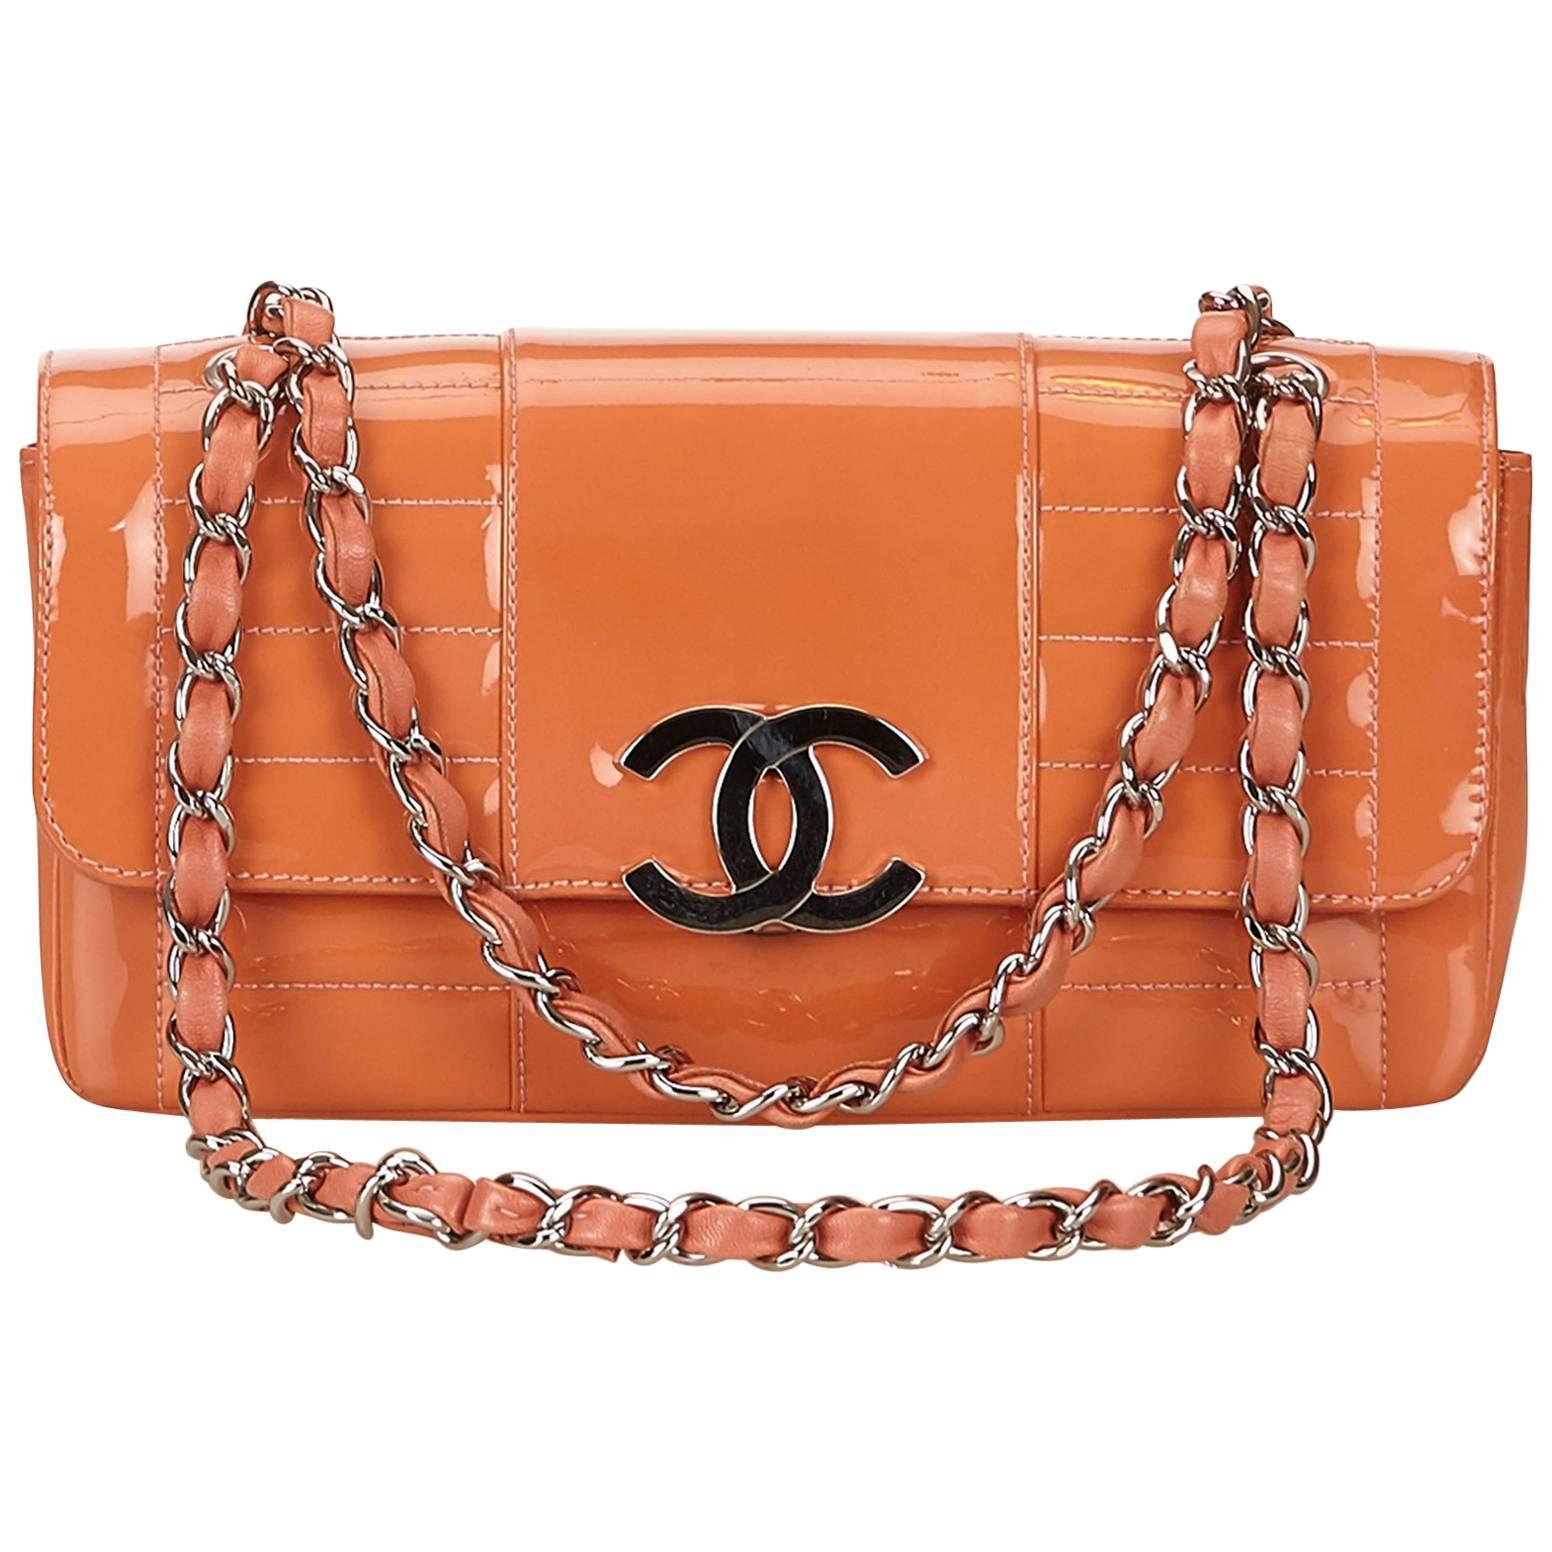 Chanel Orange Matelasse Patent Leather Shoulder Bag